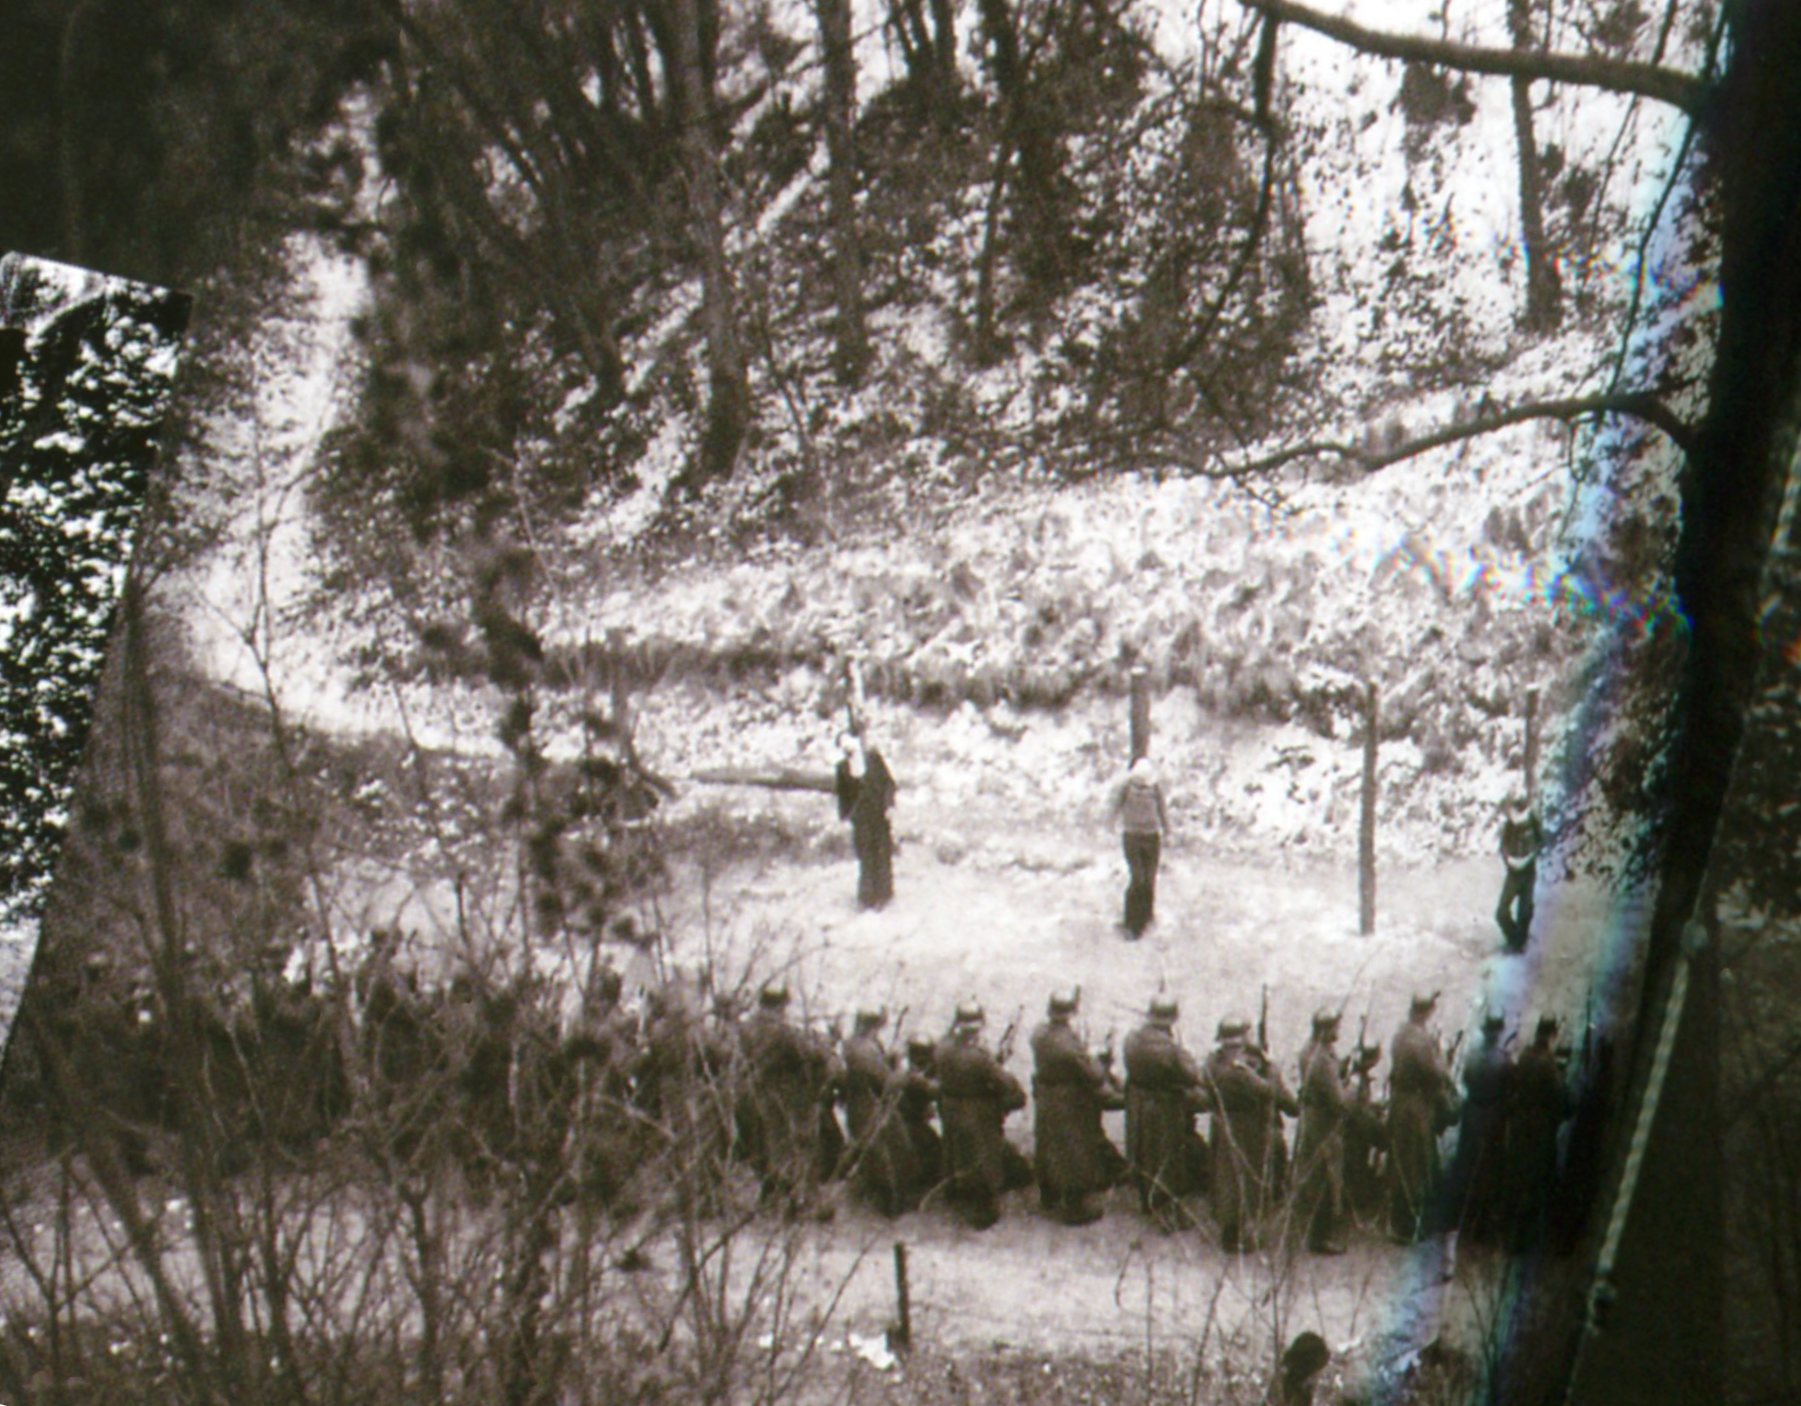  C’est à ce jour l’une des trois  seules photographies qui existent d’une exécution au Mont-Valérien. Selon Serge Klarsfeld, les condamnés photographiés seraient Celestino Alfonso, Wolf Josef Boczor, Emeric Glasz et Marcel Rajman.